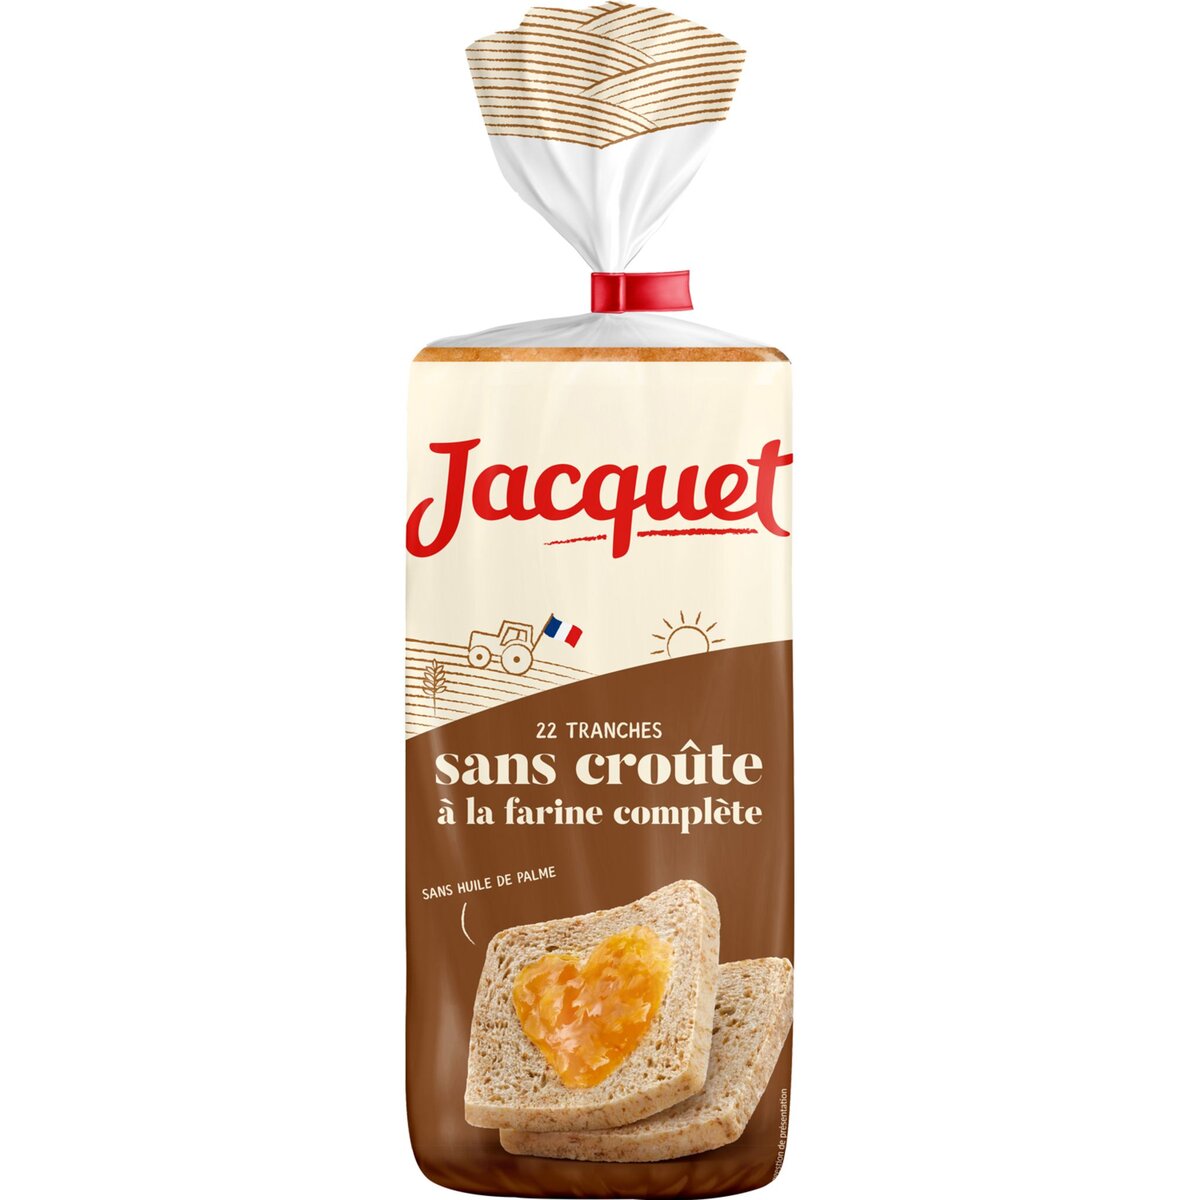 JACQUET Jacquet carrément mie Pain complet sans huile de palme sans croûte 475g 22 tranches 475g